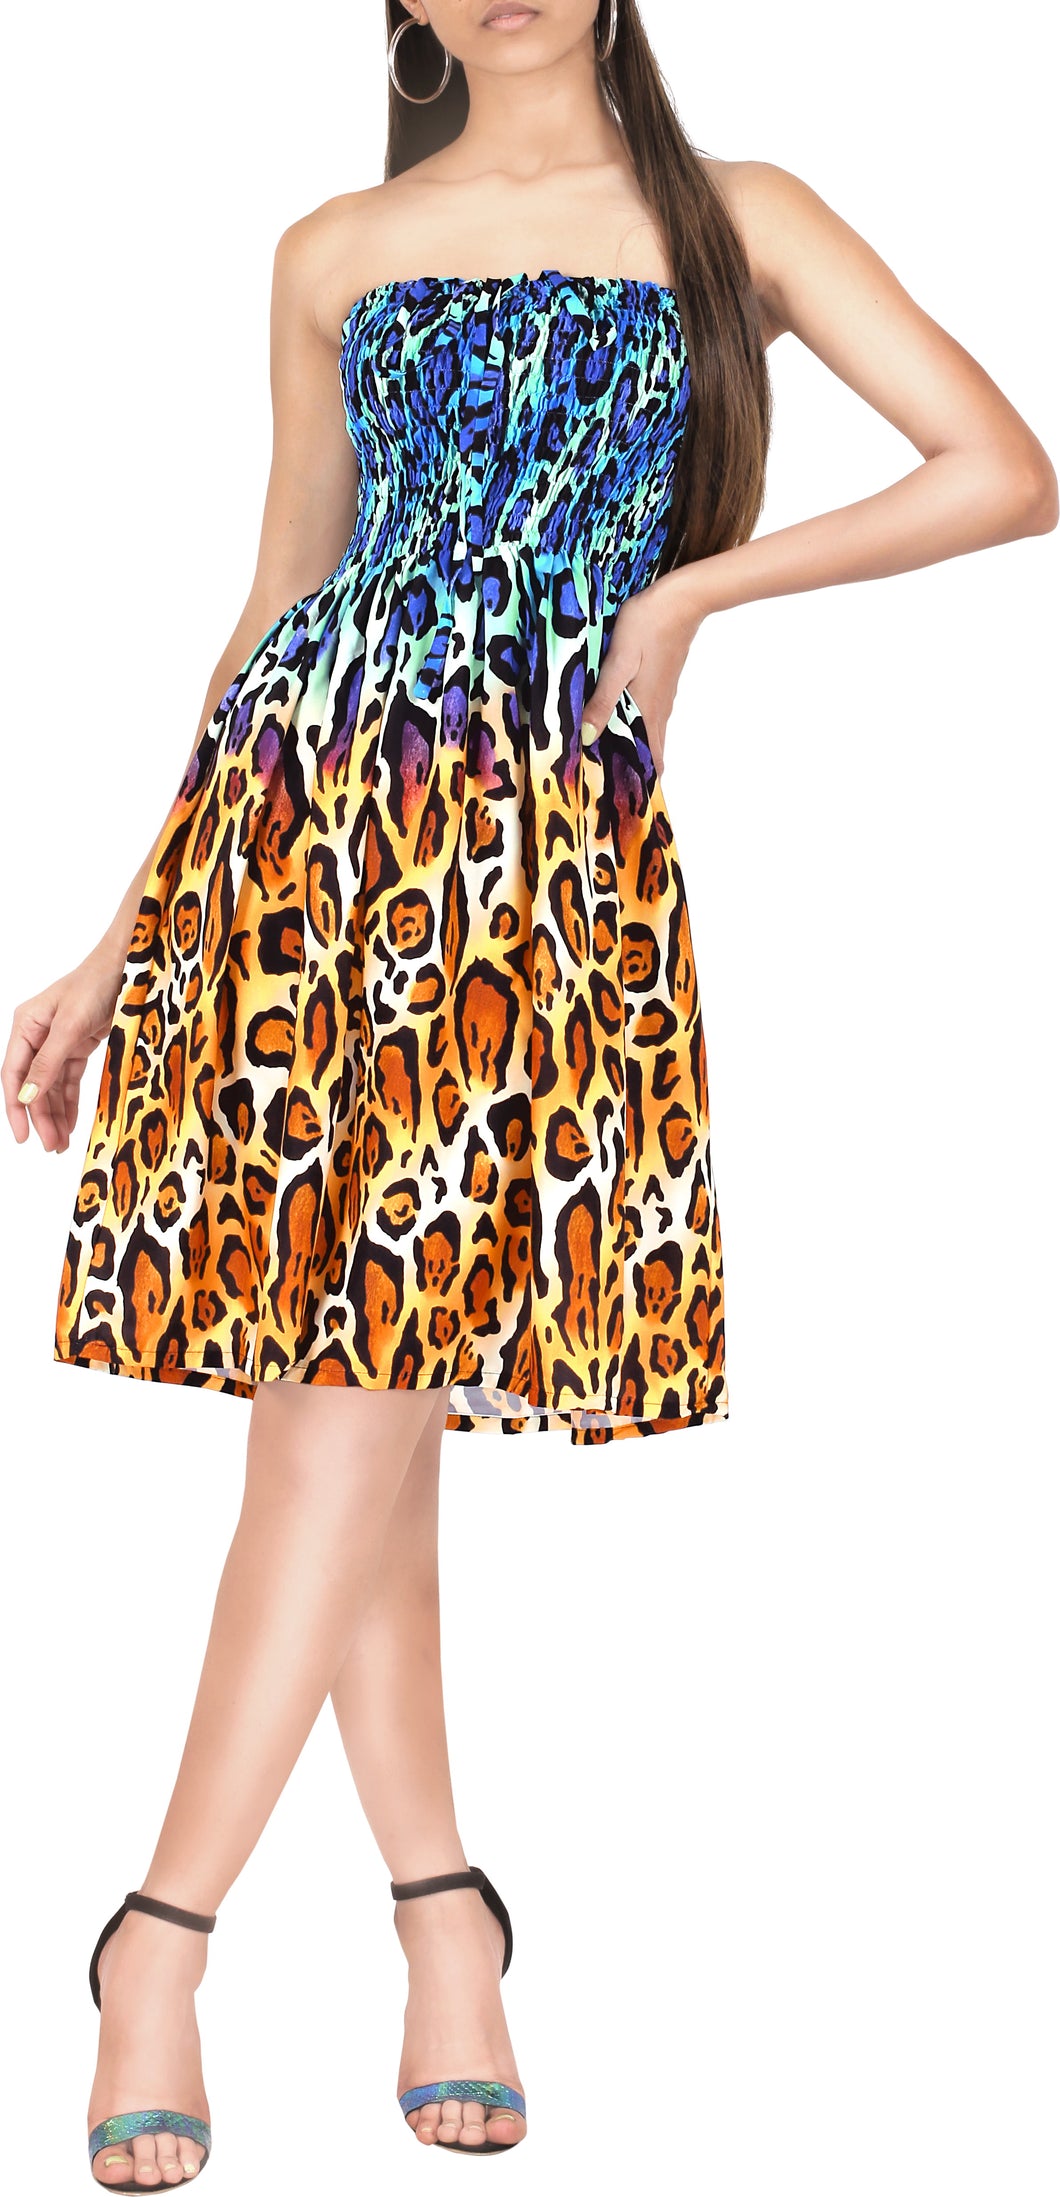 Multi Color Leopard Print Short Tube Dress For Women